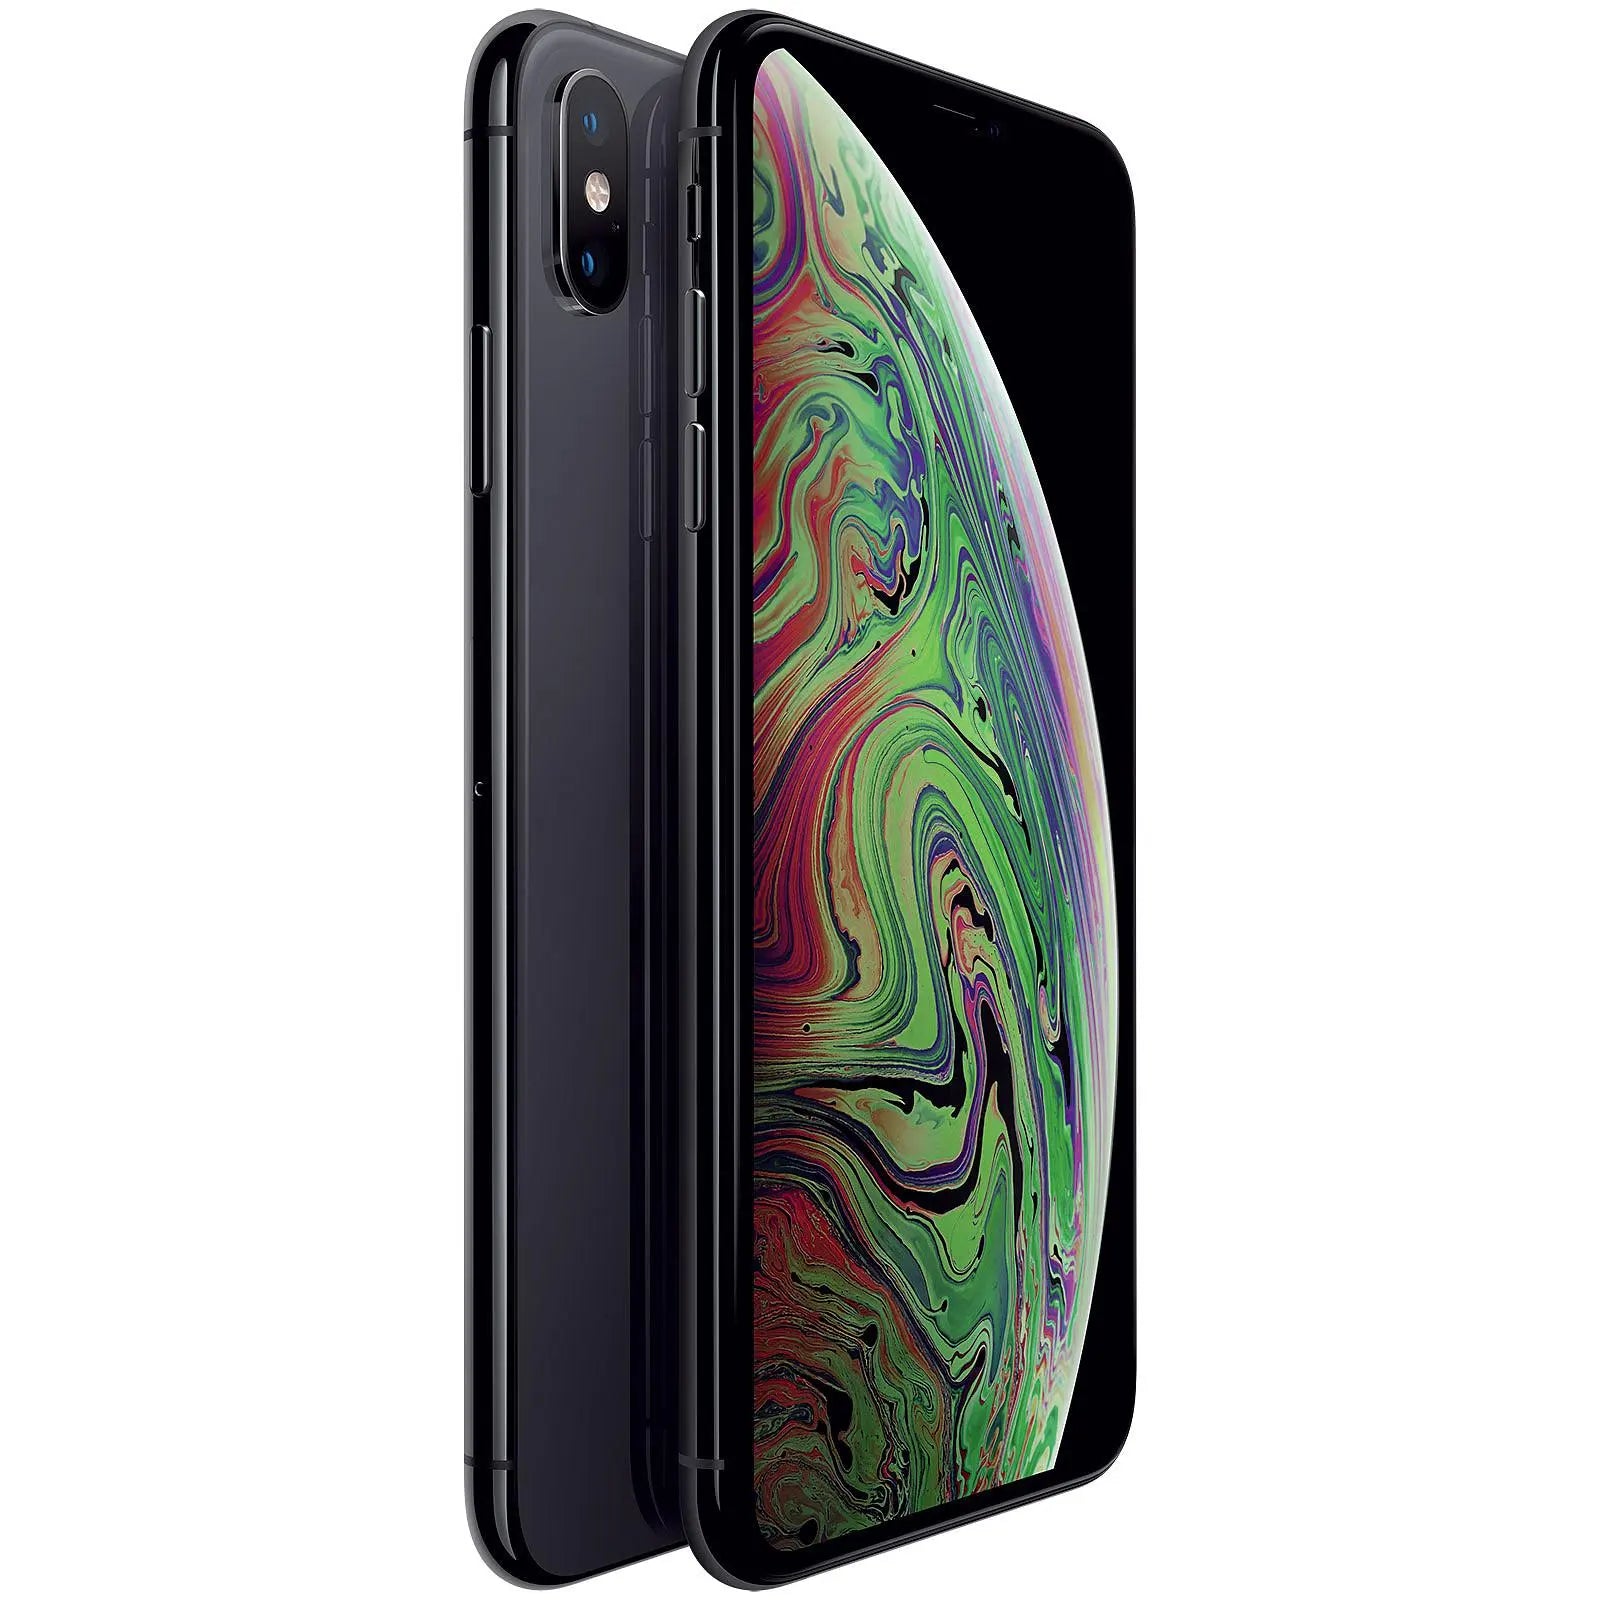 iPhone XS MAX 256GB rymdgrå 2018